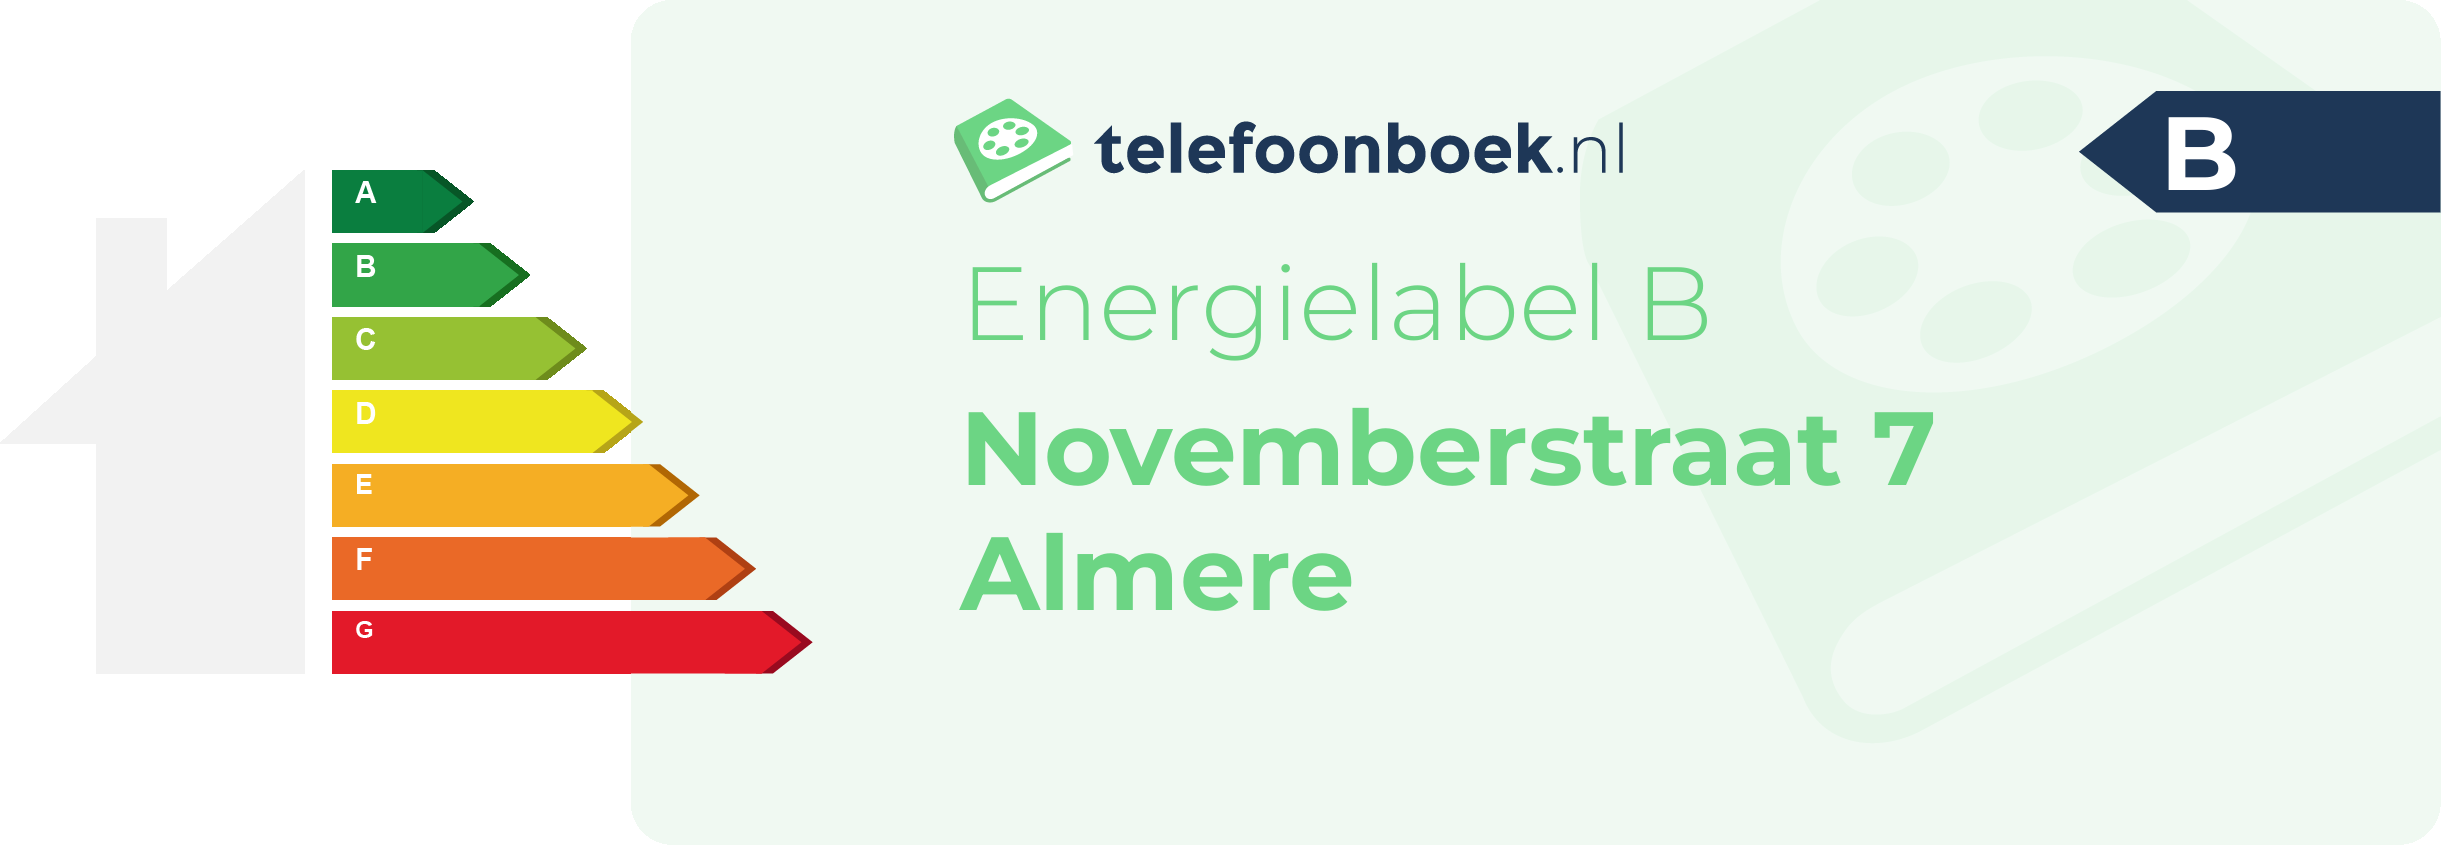 Energielabel Novemberstraat 7 Almere